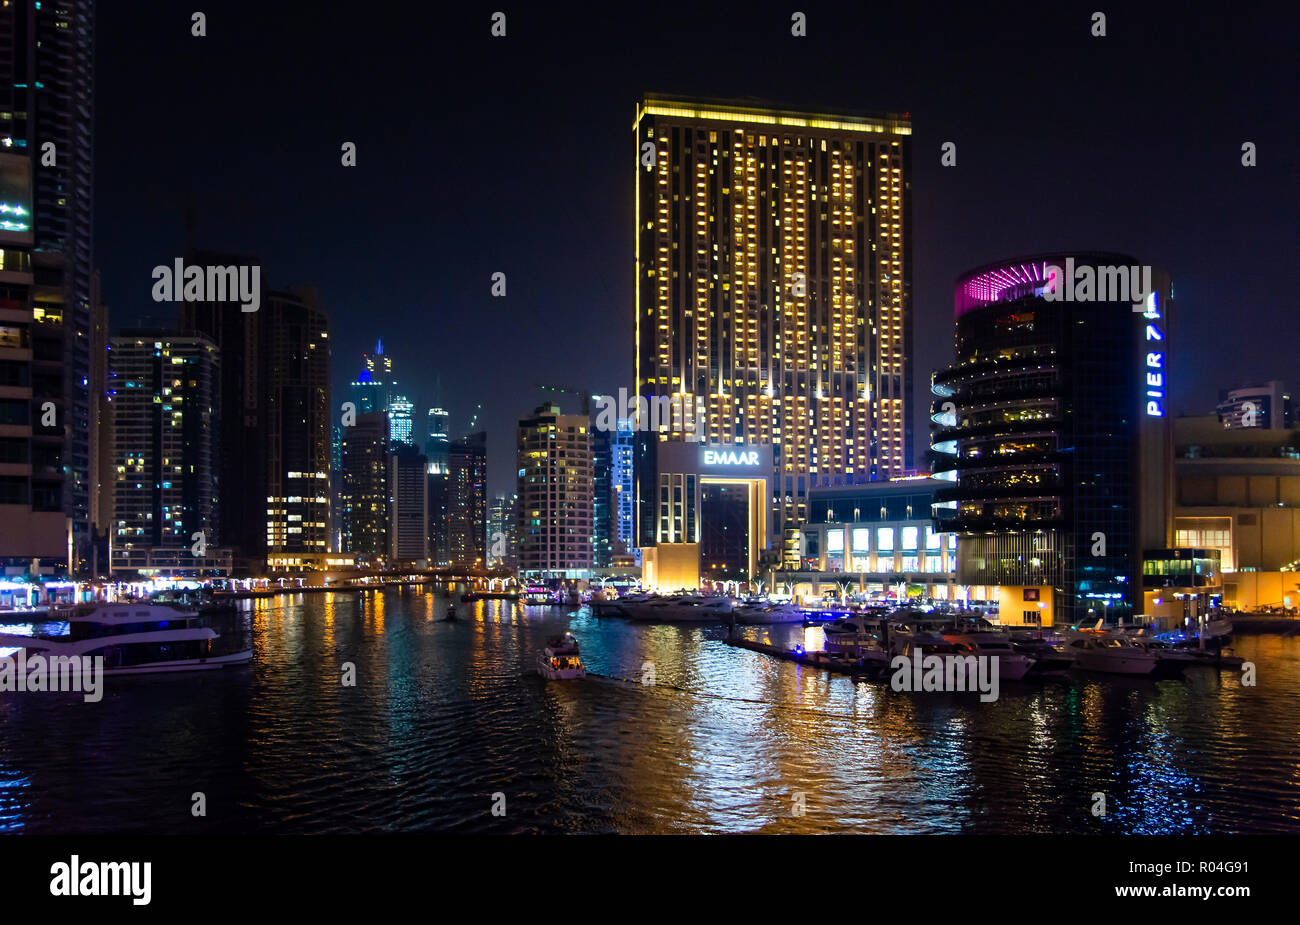 Dubai, Emiratos Árabes Unidos - Marzo 8, 2018: Dubai Marina vista nocturna desde el puente, escenario de lujo Foto de stock